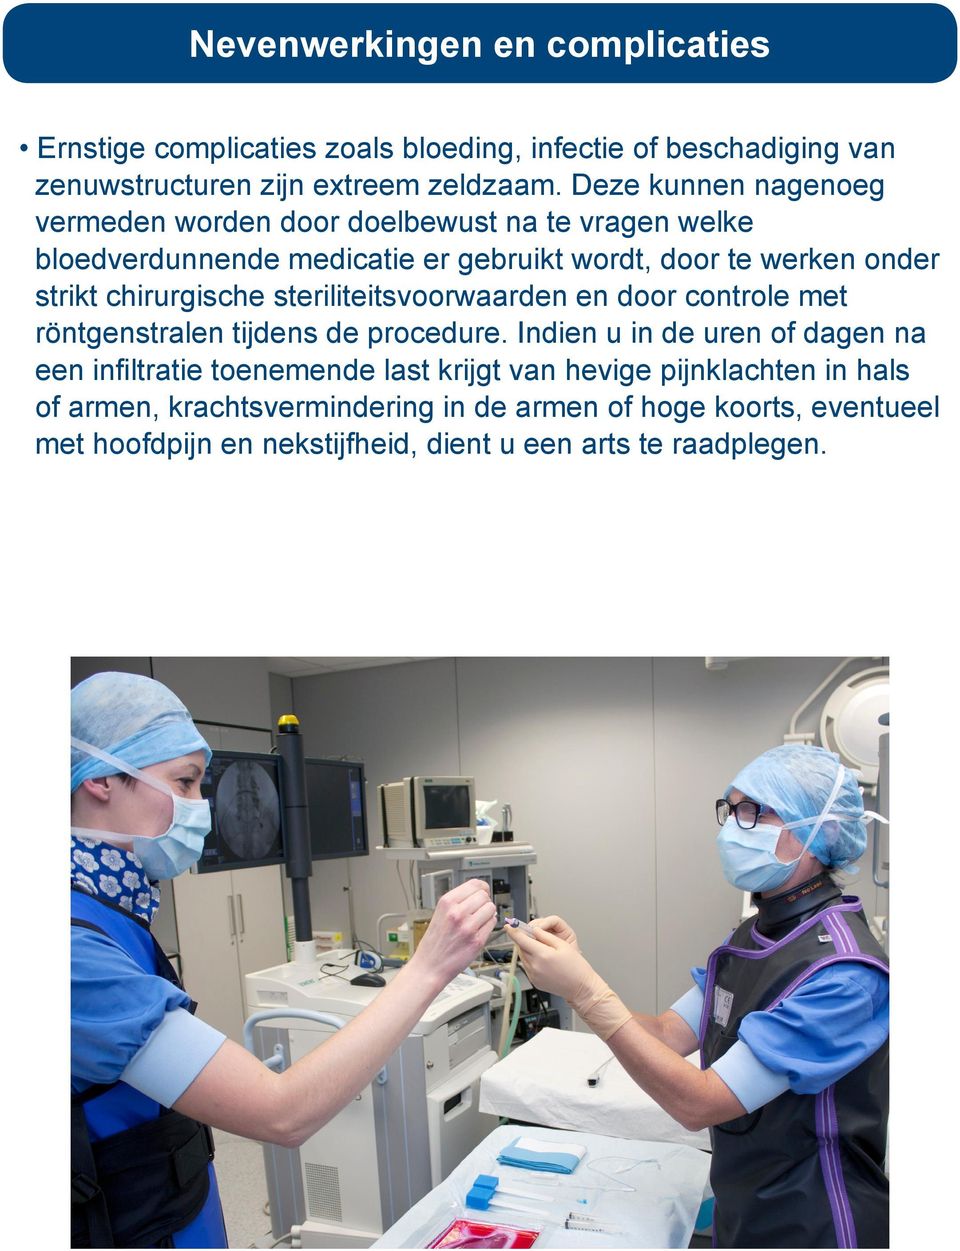 chirurgische steriliteitsvoorwaarden en door controle met röntgenstralen tijdens de procedure.